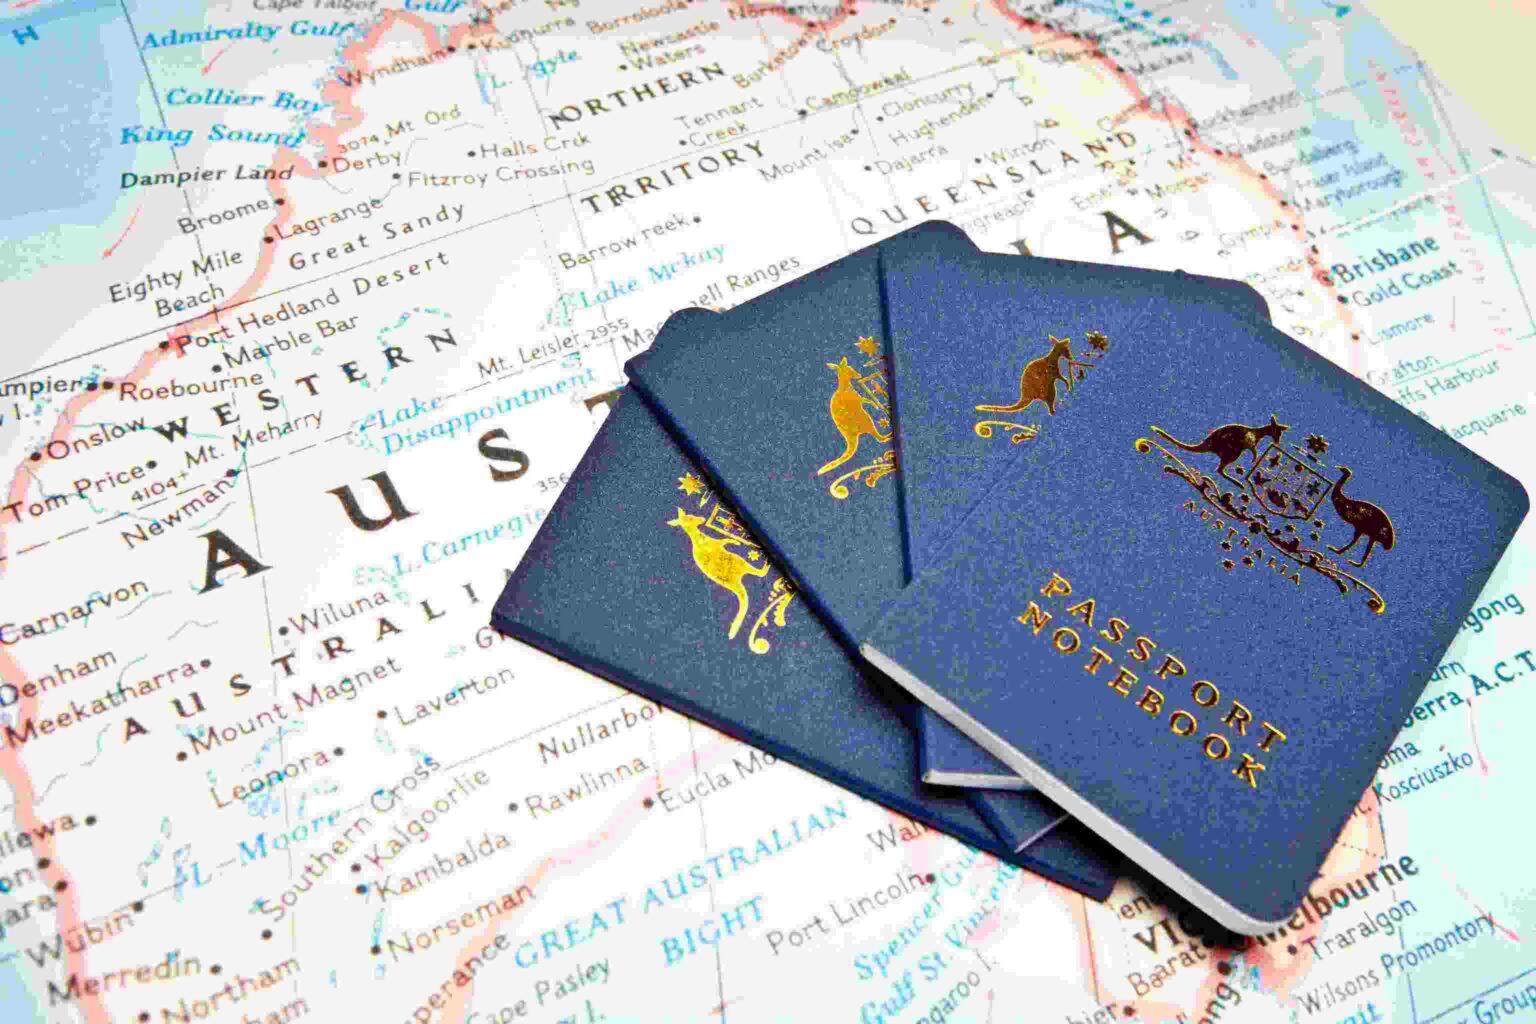 tourist visa show money australia